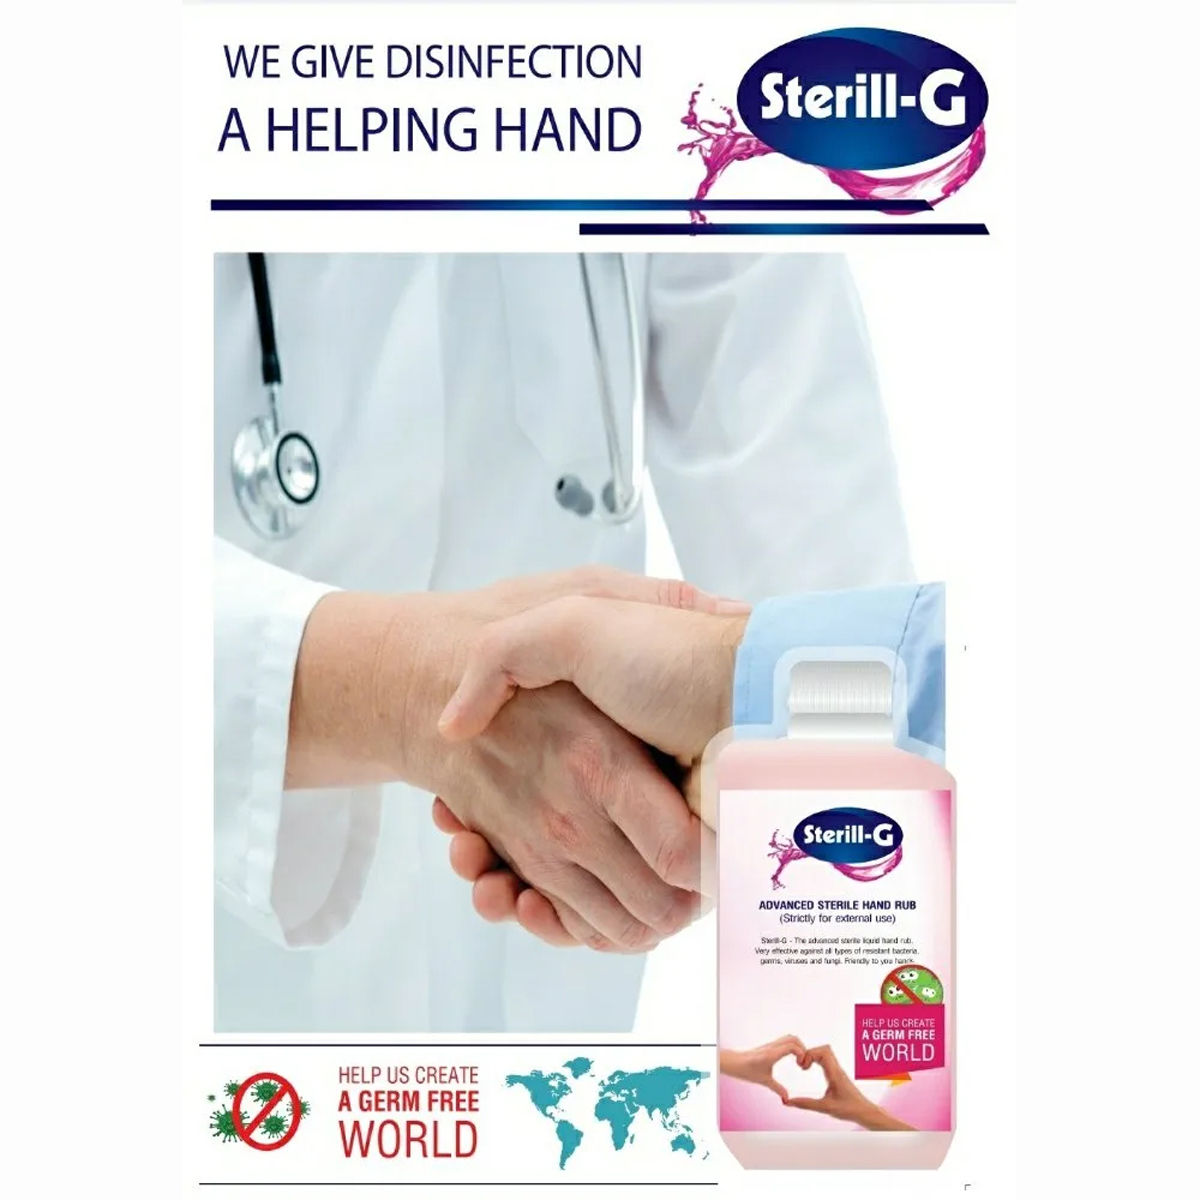 Sterill-G Advanced Sterile Handrub, 500 ml , Pack of 1 